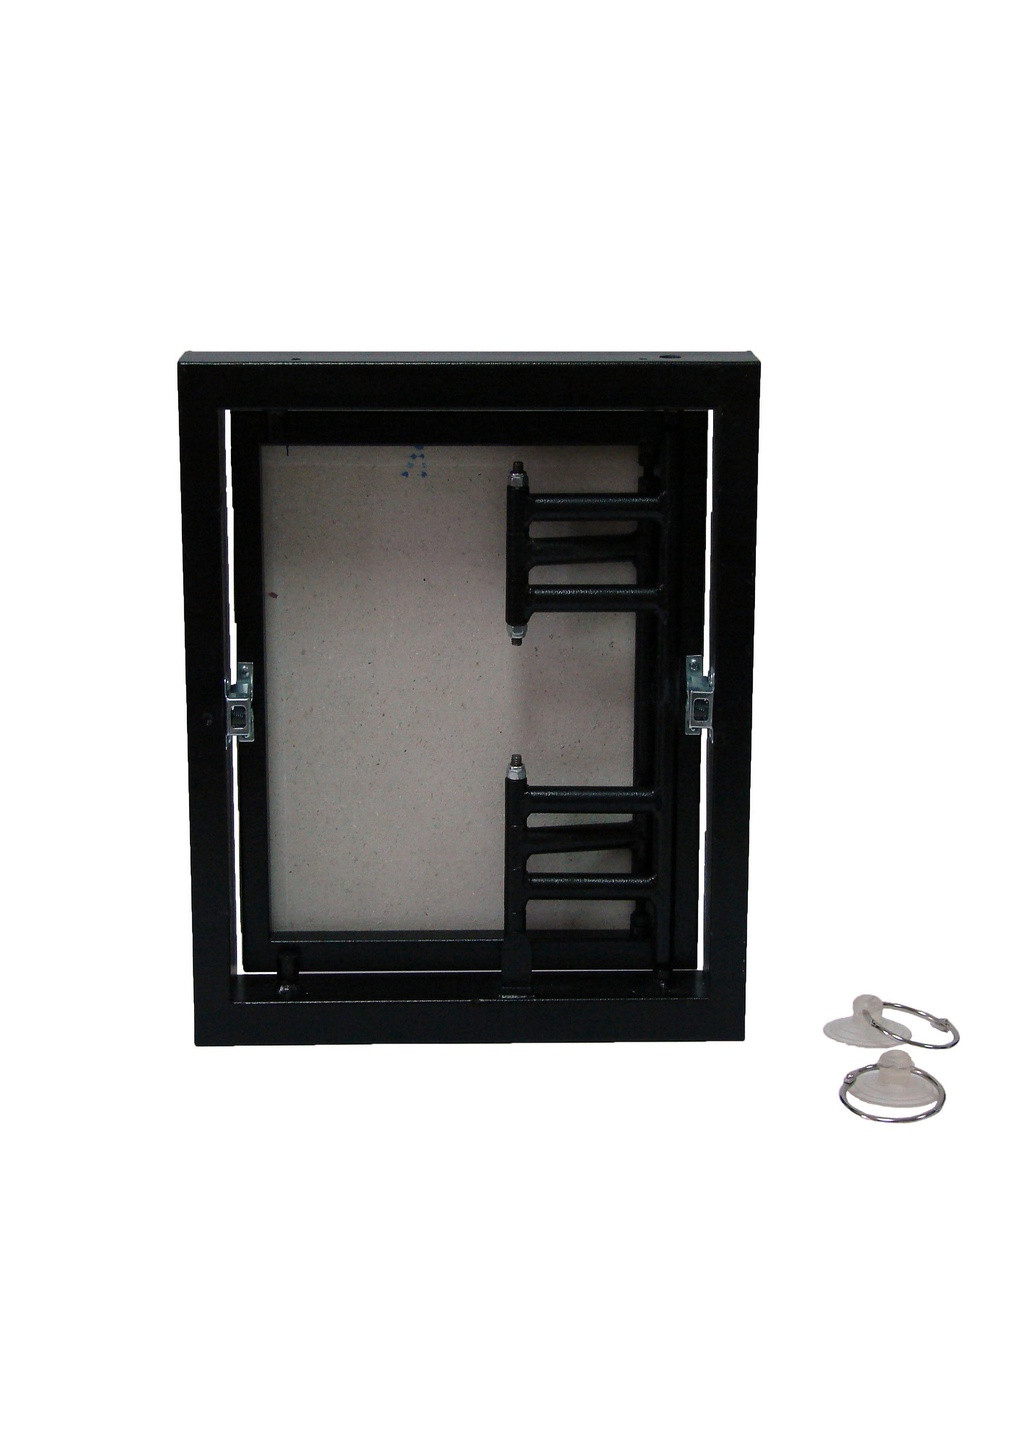 Ревизионный люк скрытого монтажа под плитку фронтально-распашного типа 250x350 ревизионная дверца для плитки (1216) S-Dom (295037996)